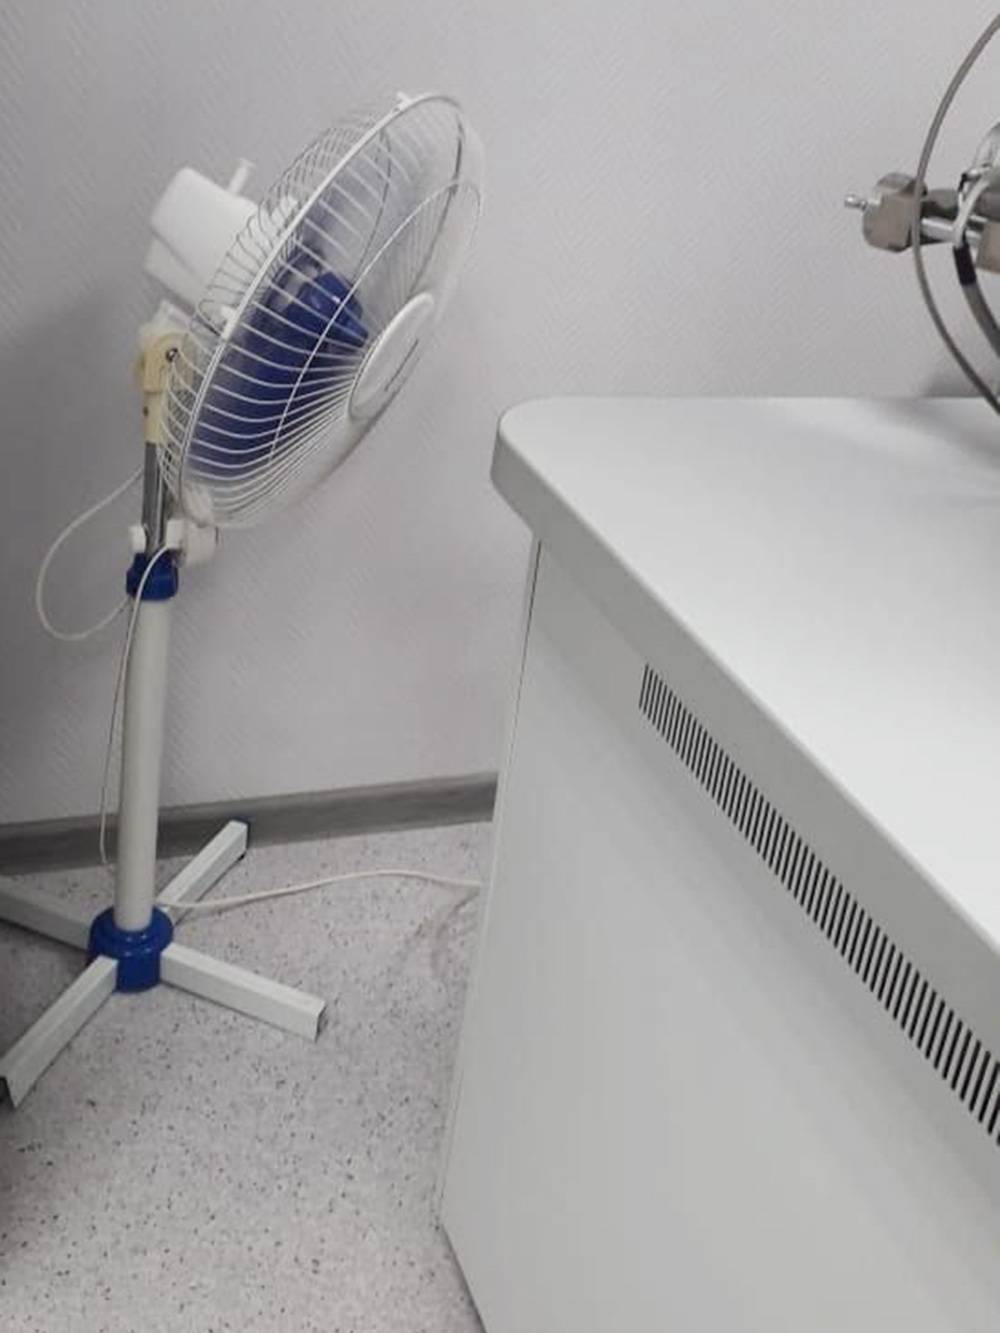 Вентилятор дует ровно на&nbsp;систему вентиляции и охлаждения прибора